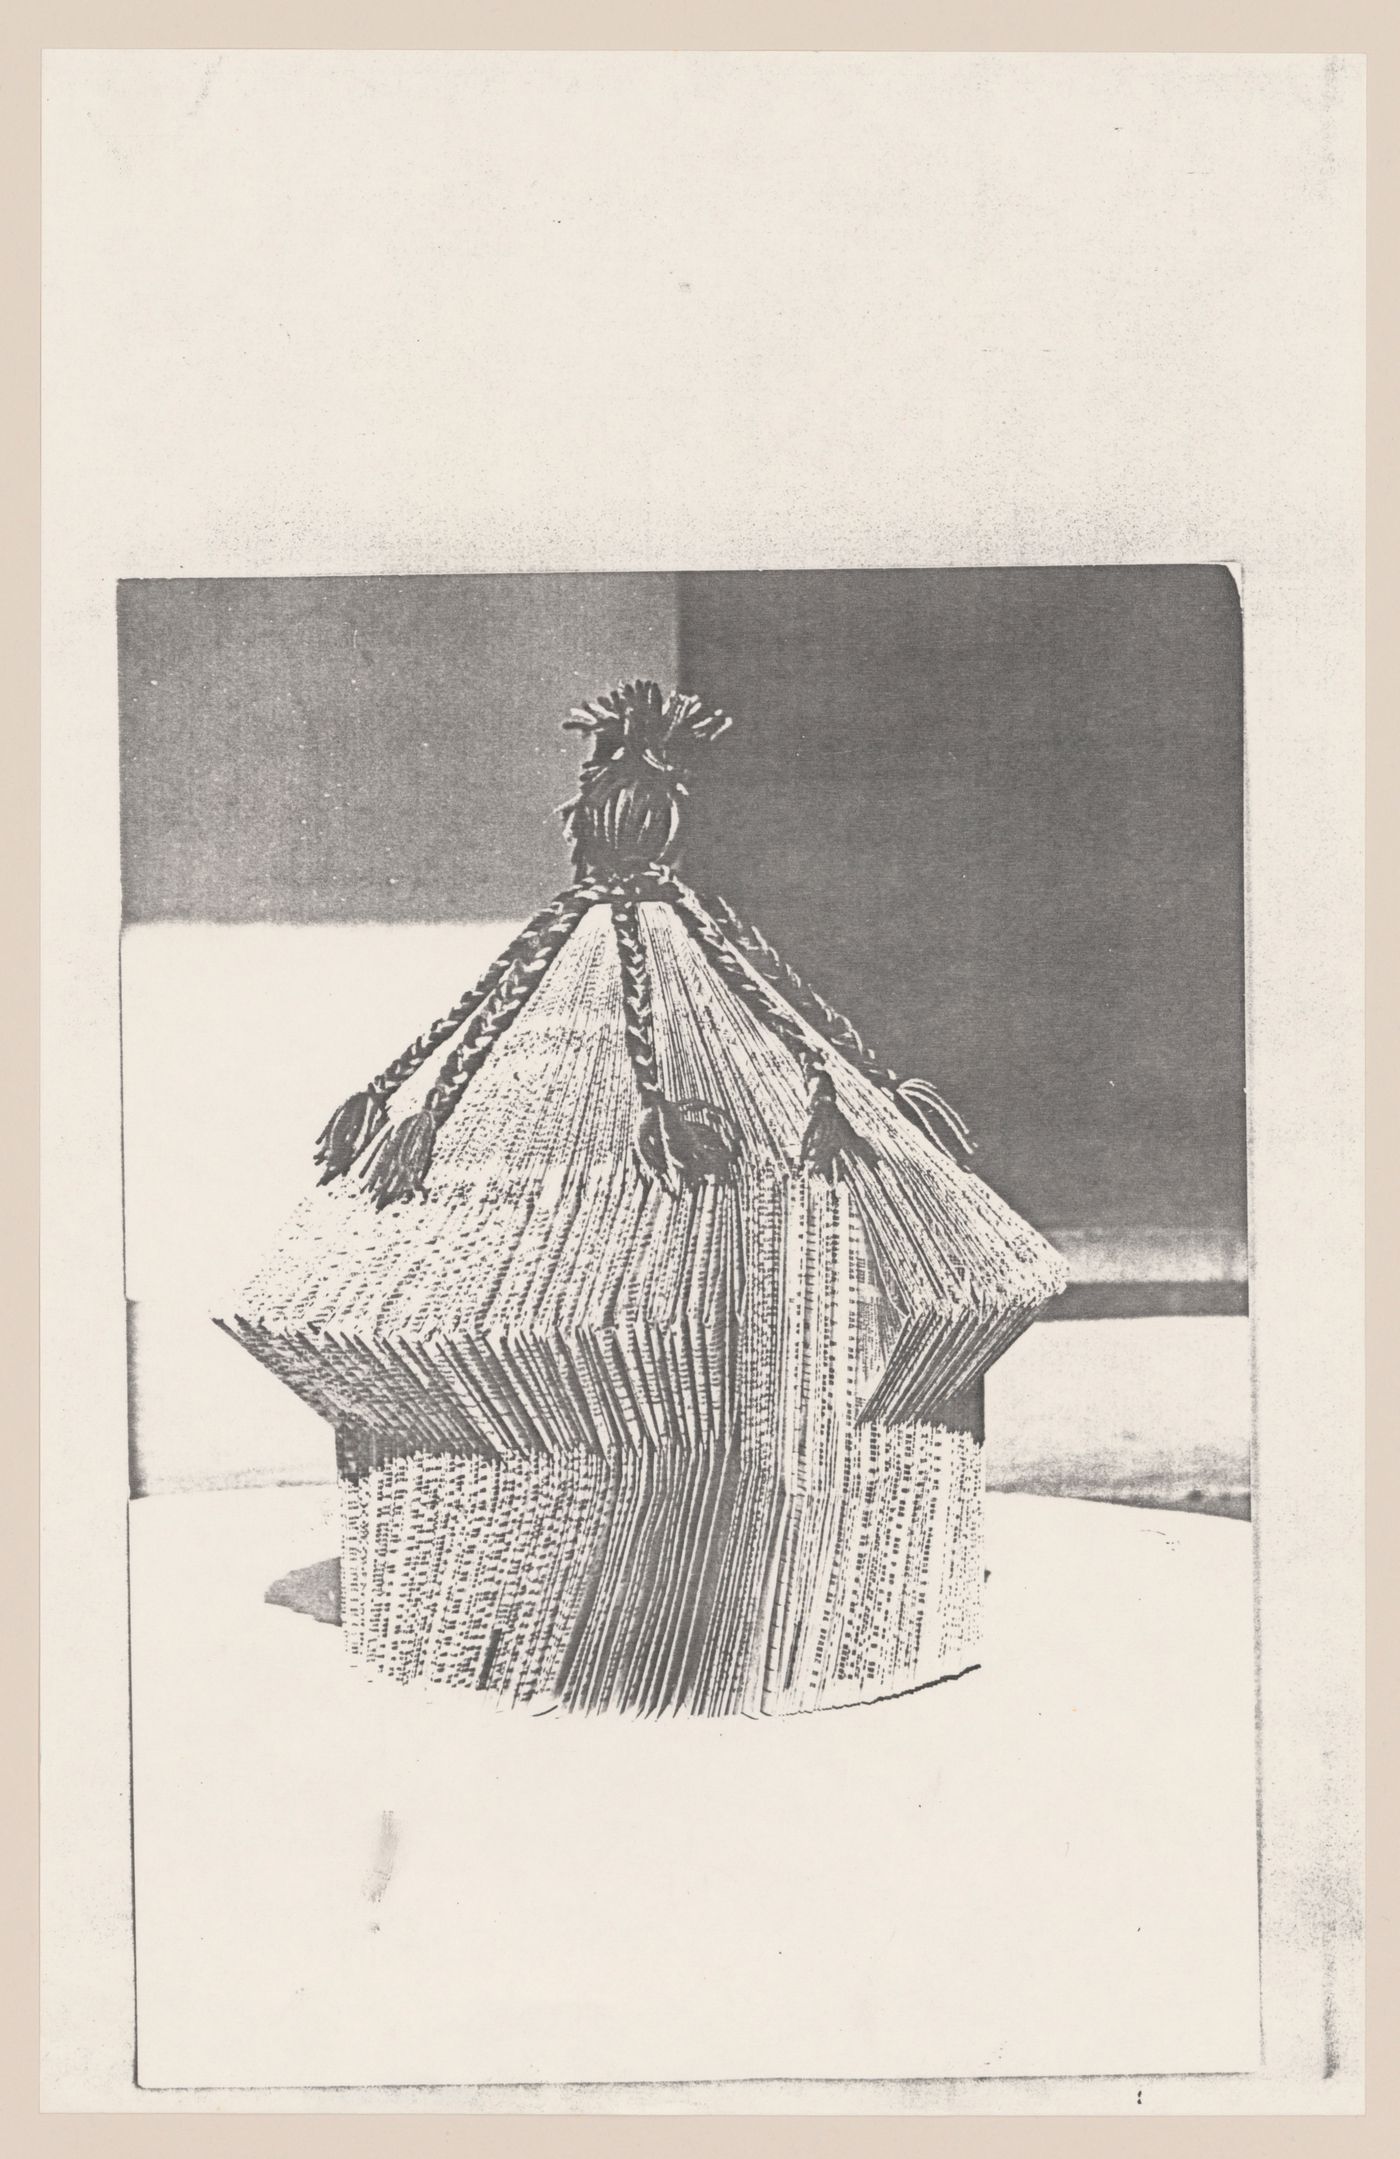 Photograph of a model for Architecttura di carta [Paper architecture]